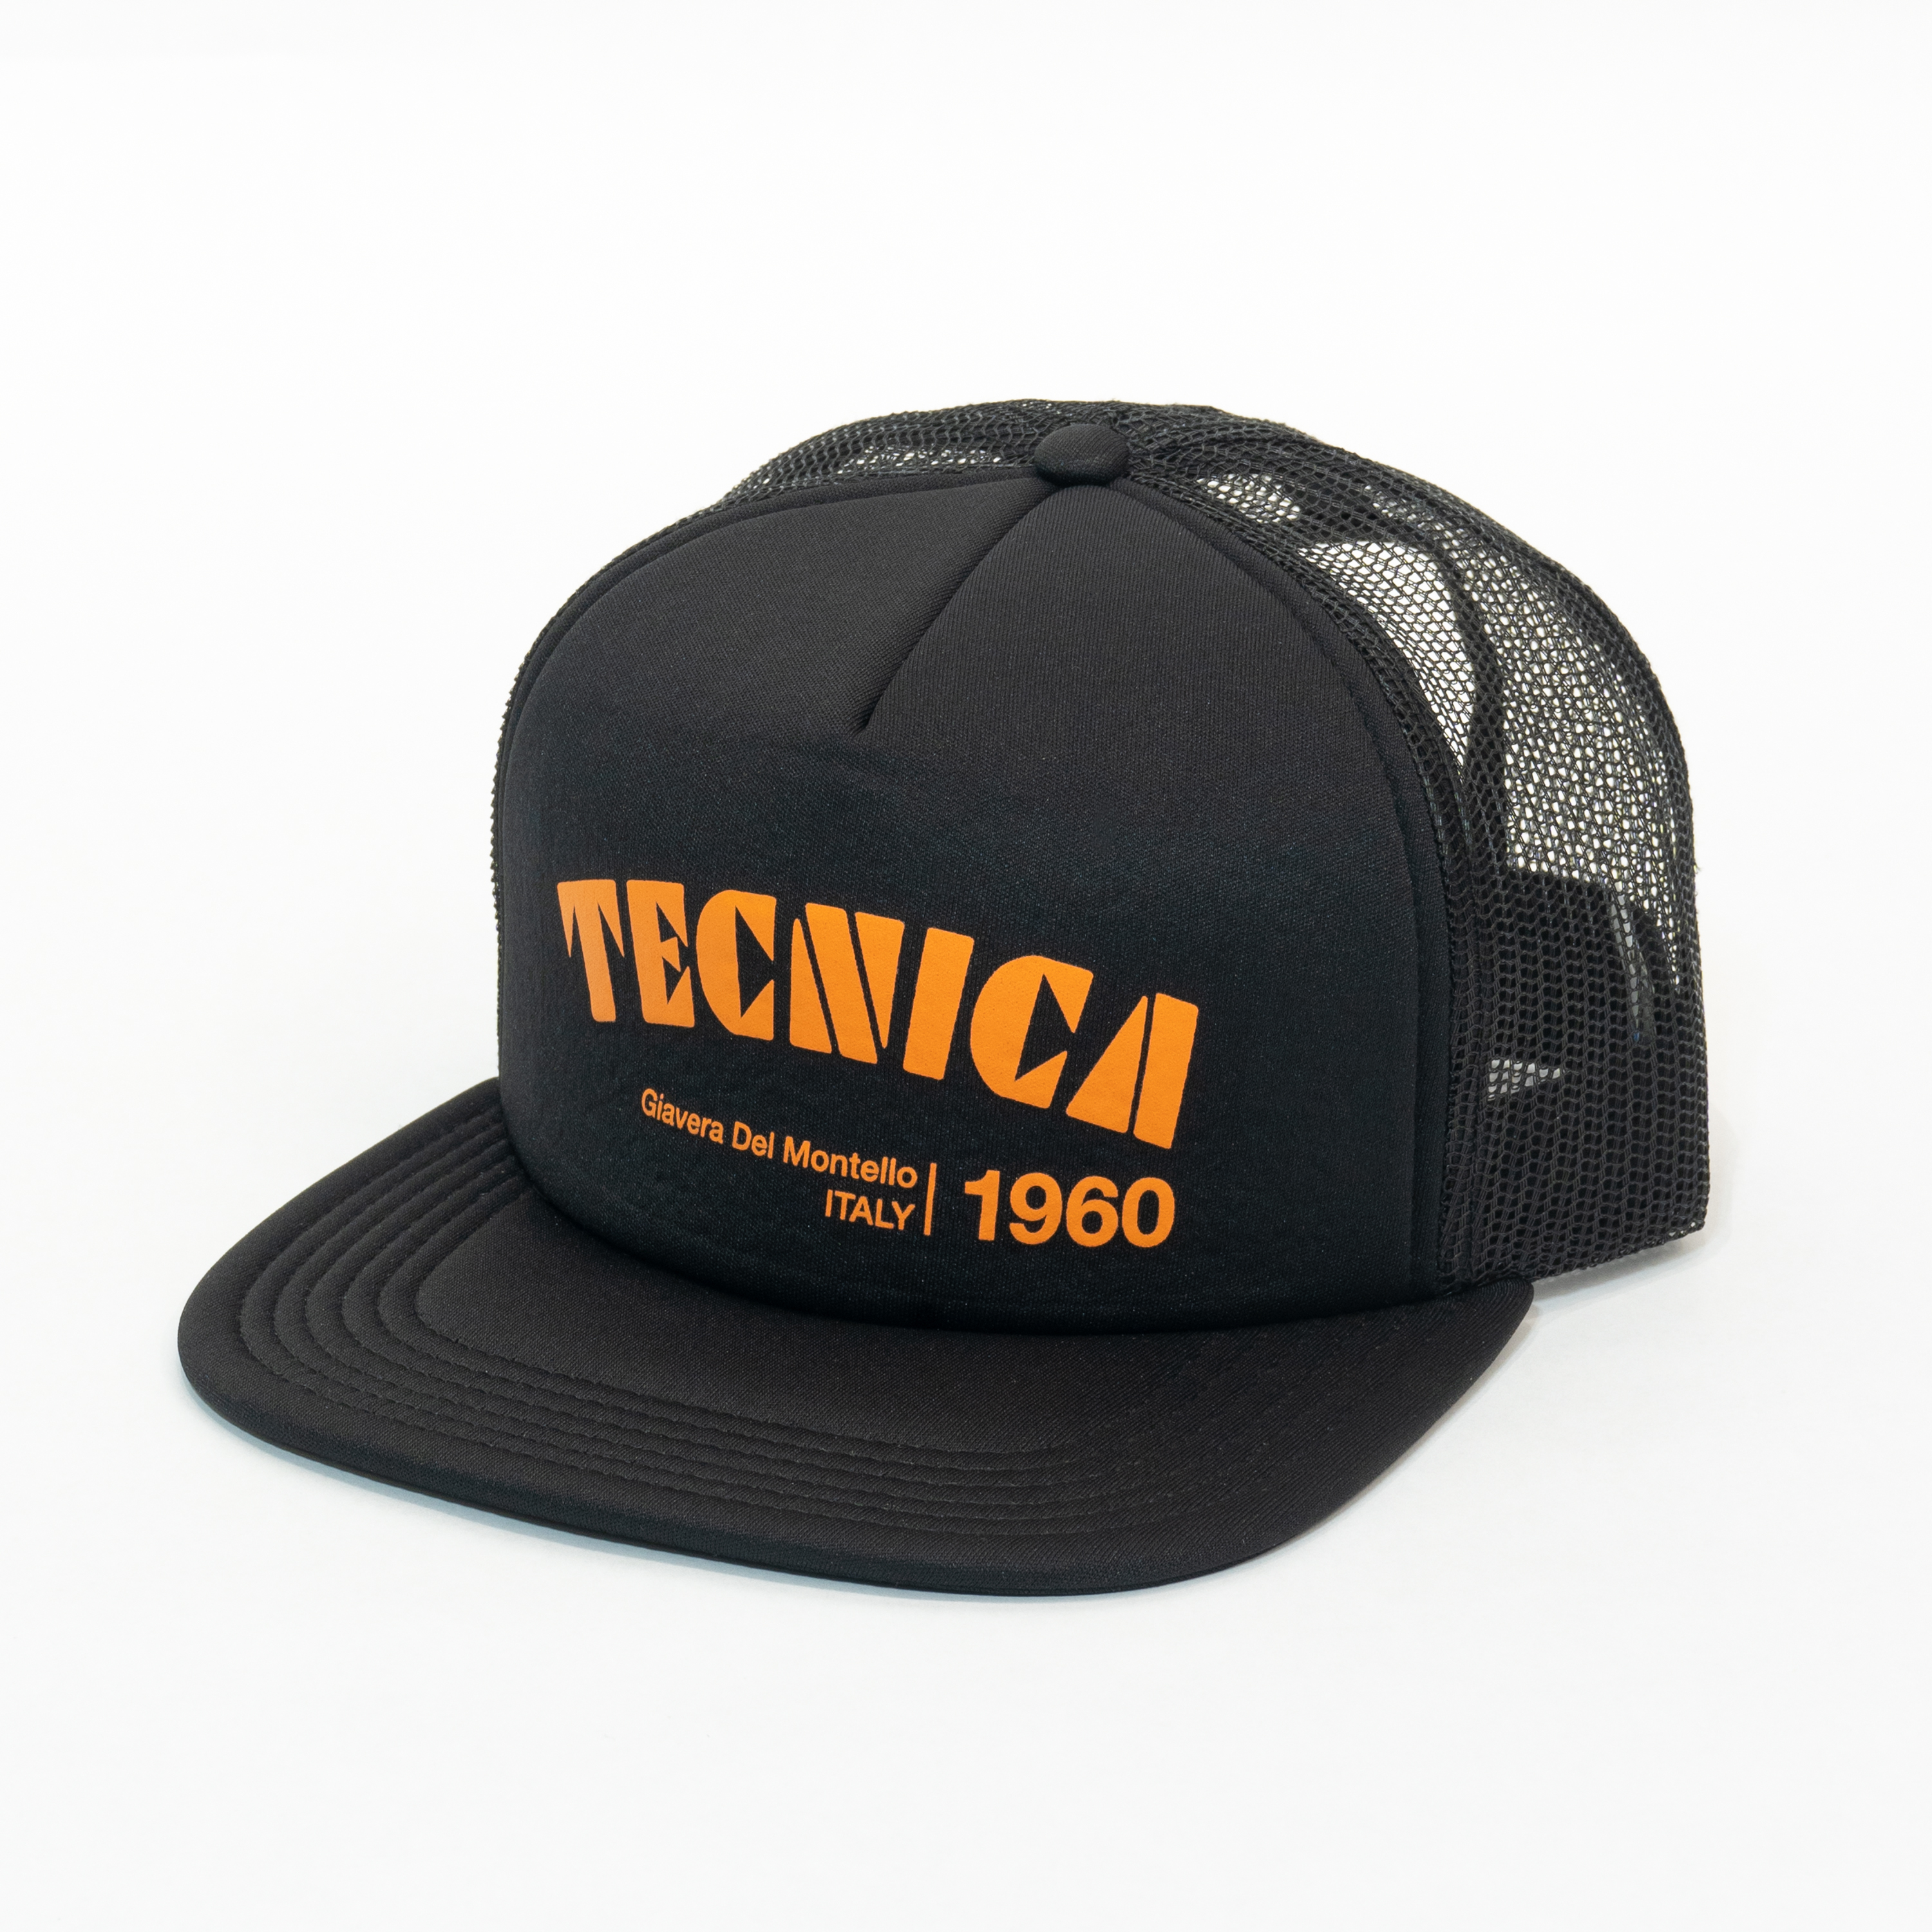 TECNICA FOAM BRANDED HAT